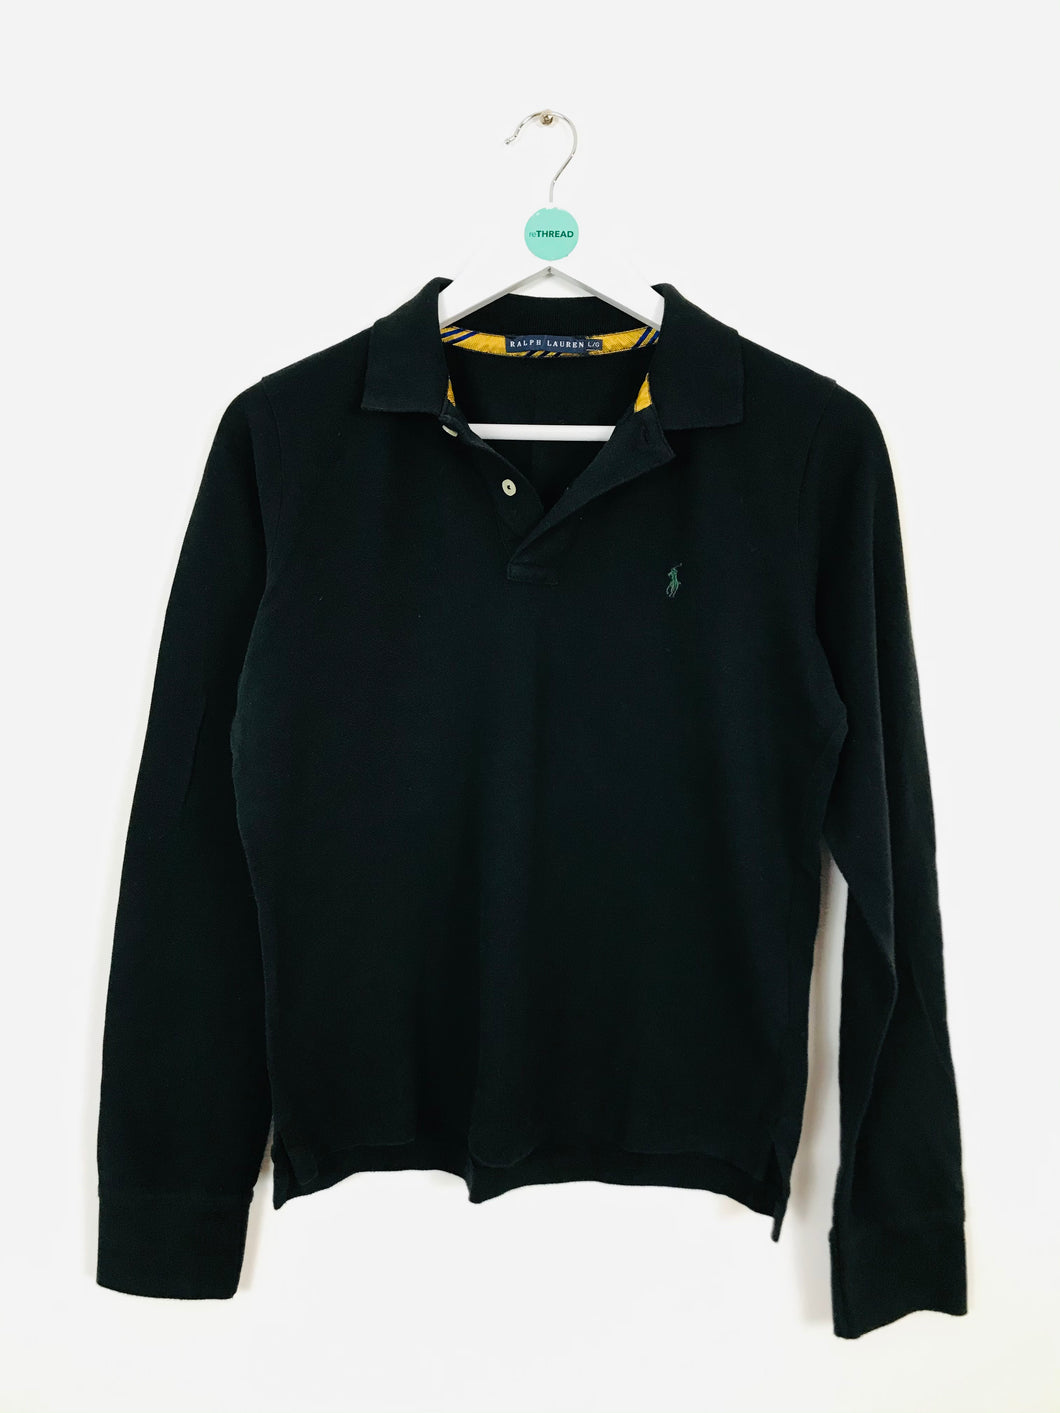 Ralph Lauren Women’s Long Sleeve Polo Shirt | L UK14 | Black